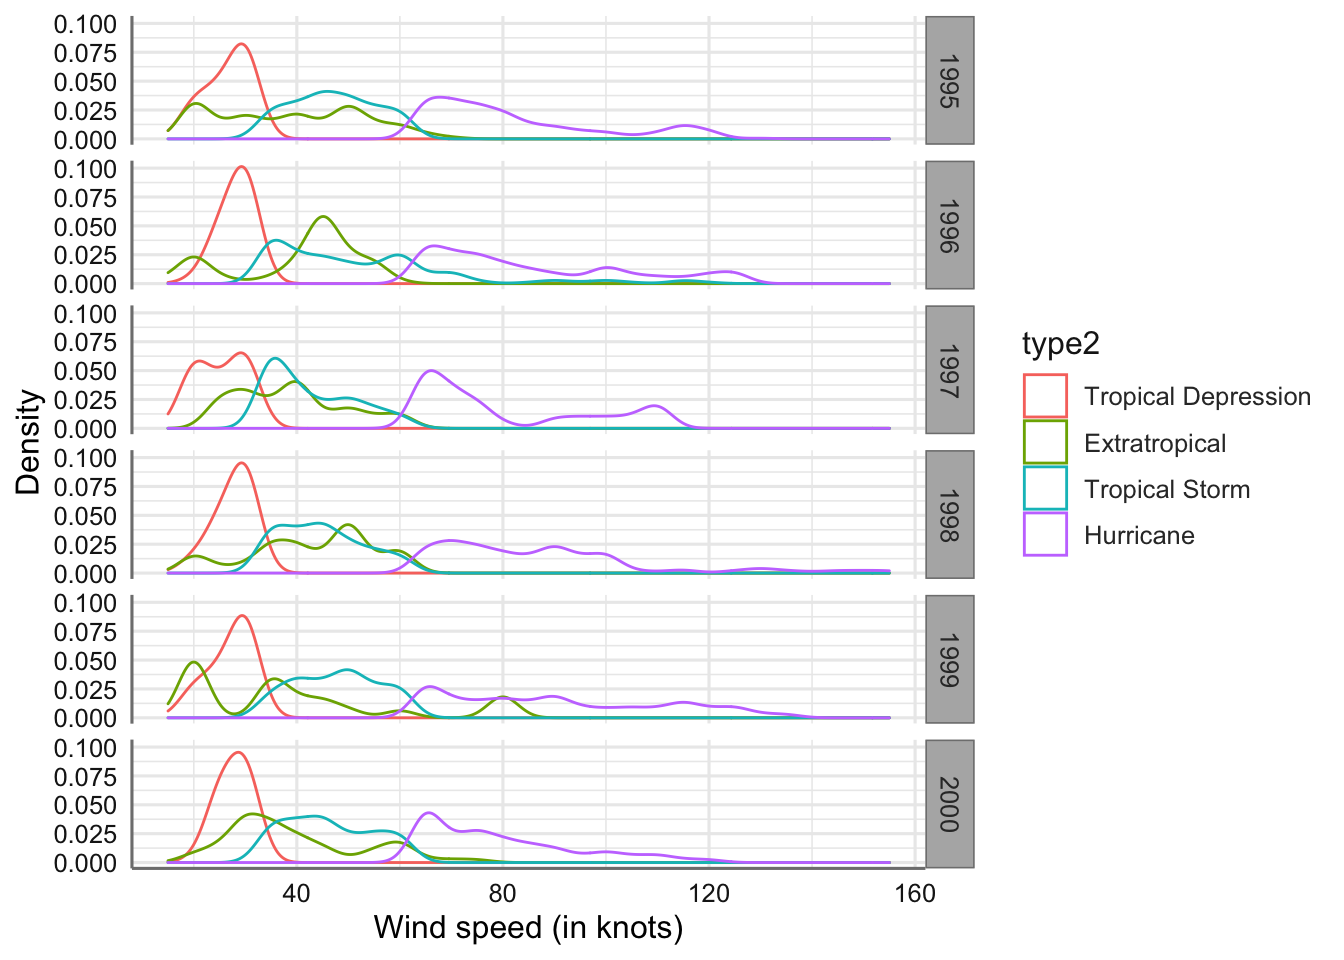 Gráfico de densidad de la velocidad del viento para cada tipo de tormenta y año.